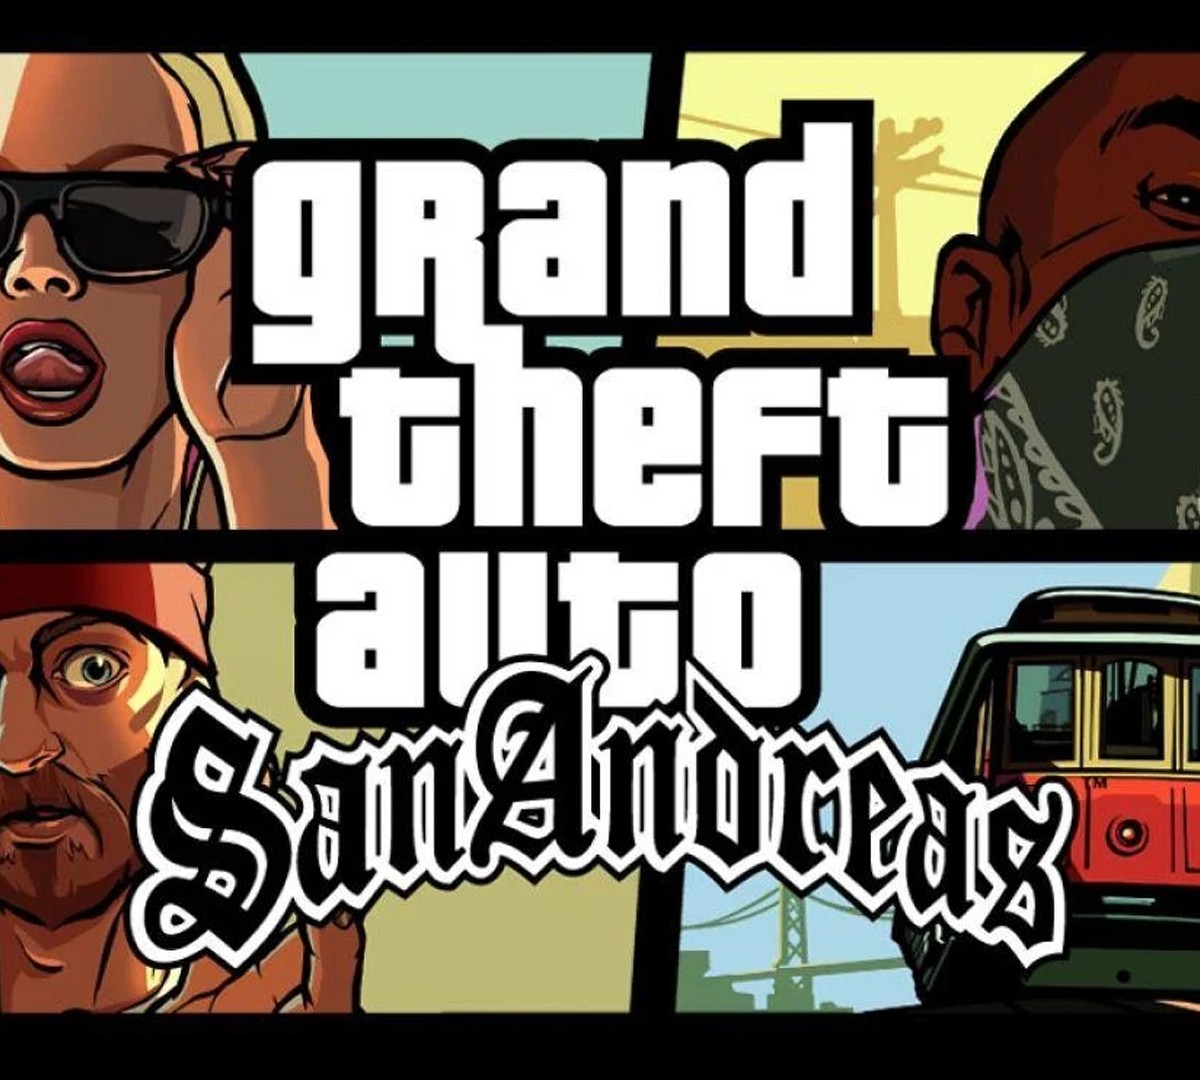 GTA San Andreas fica de graça no PC; veja como baixar